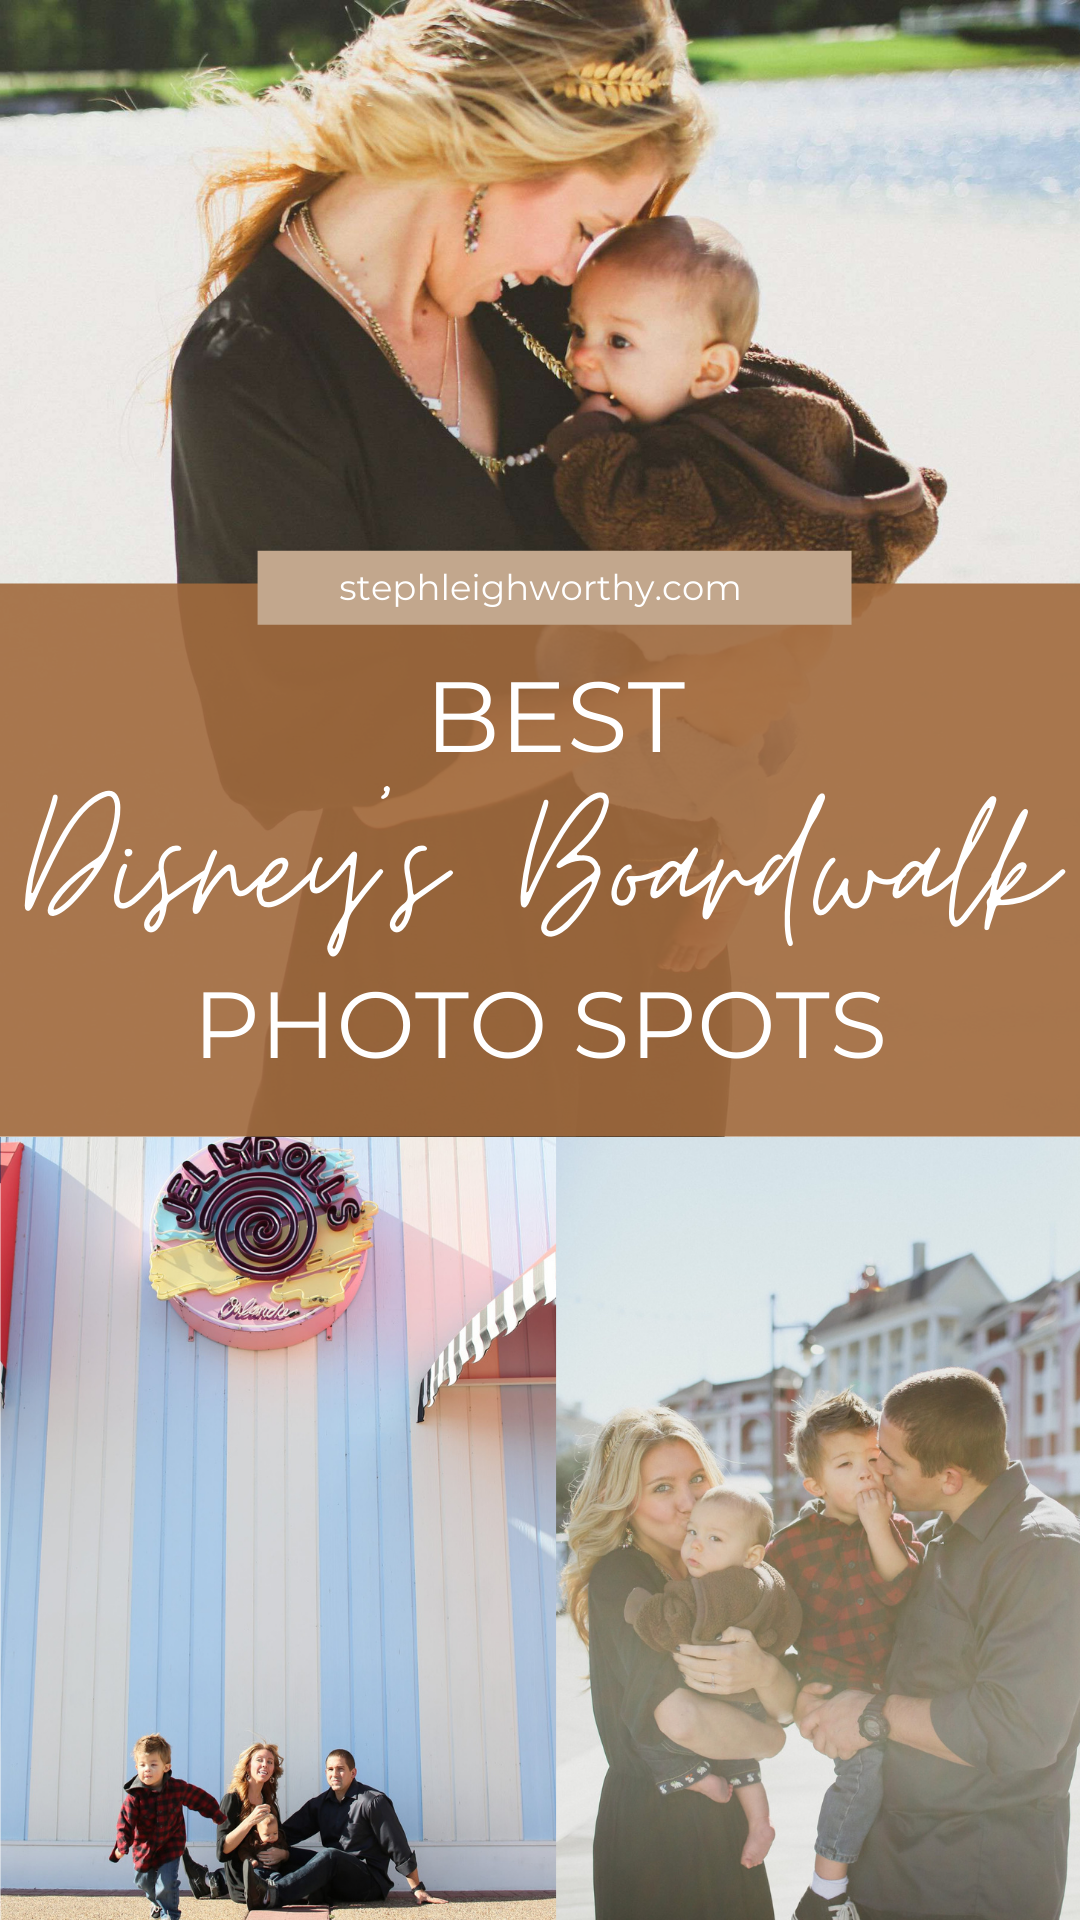 BEST LIST of Disney Boardwalk Photo Spots